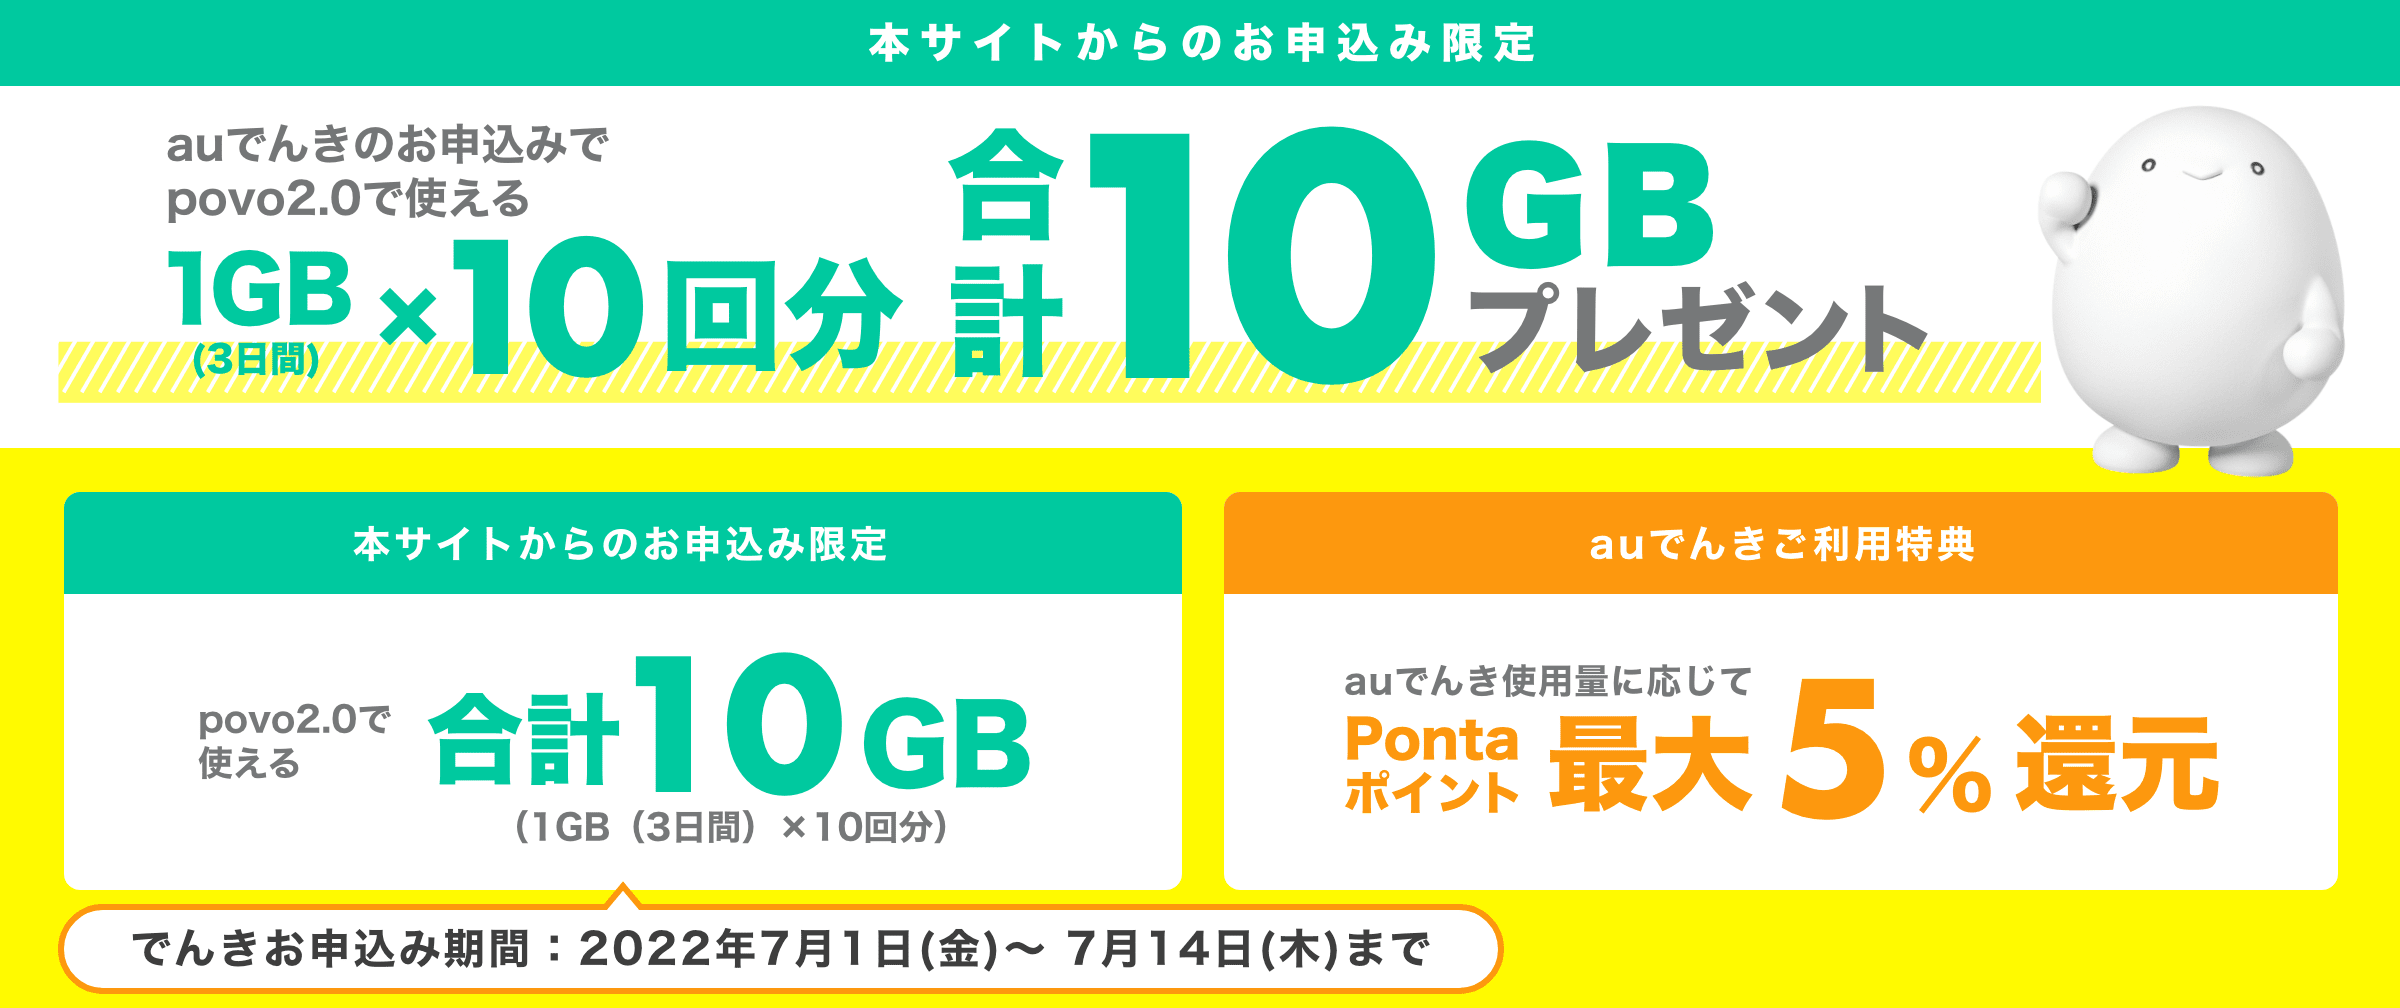 povo2.0のお客さまはauでんきへの新規お申込みで最大10GBプレゼント